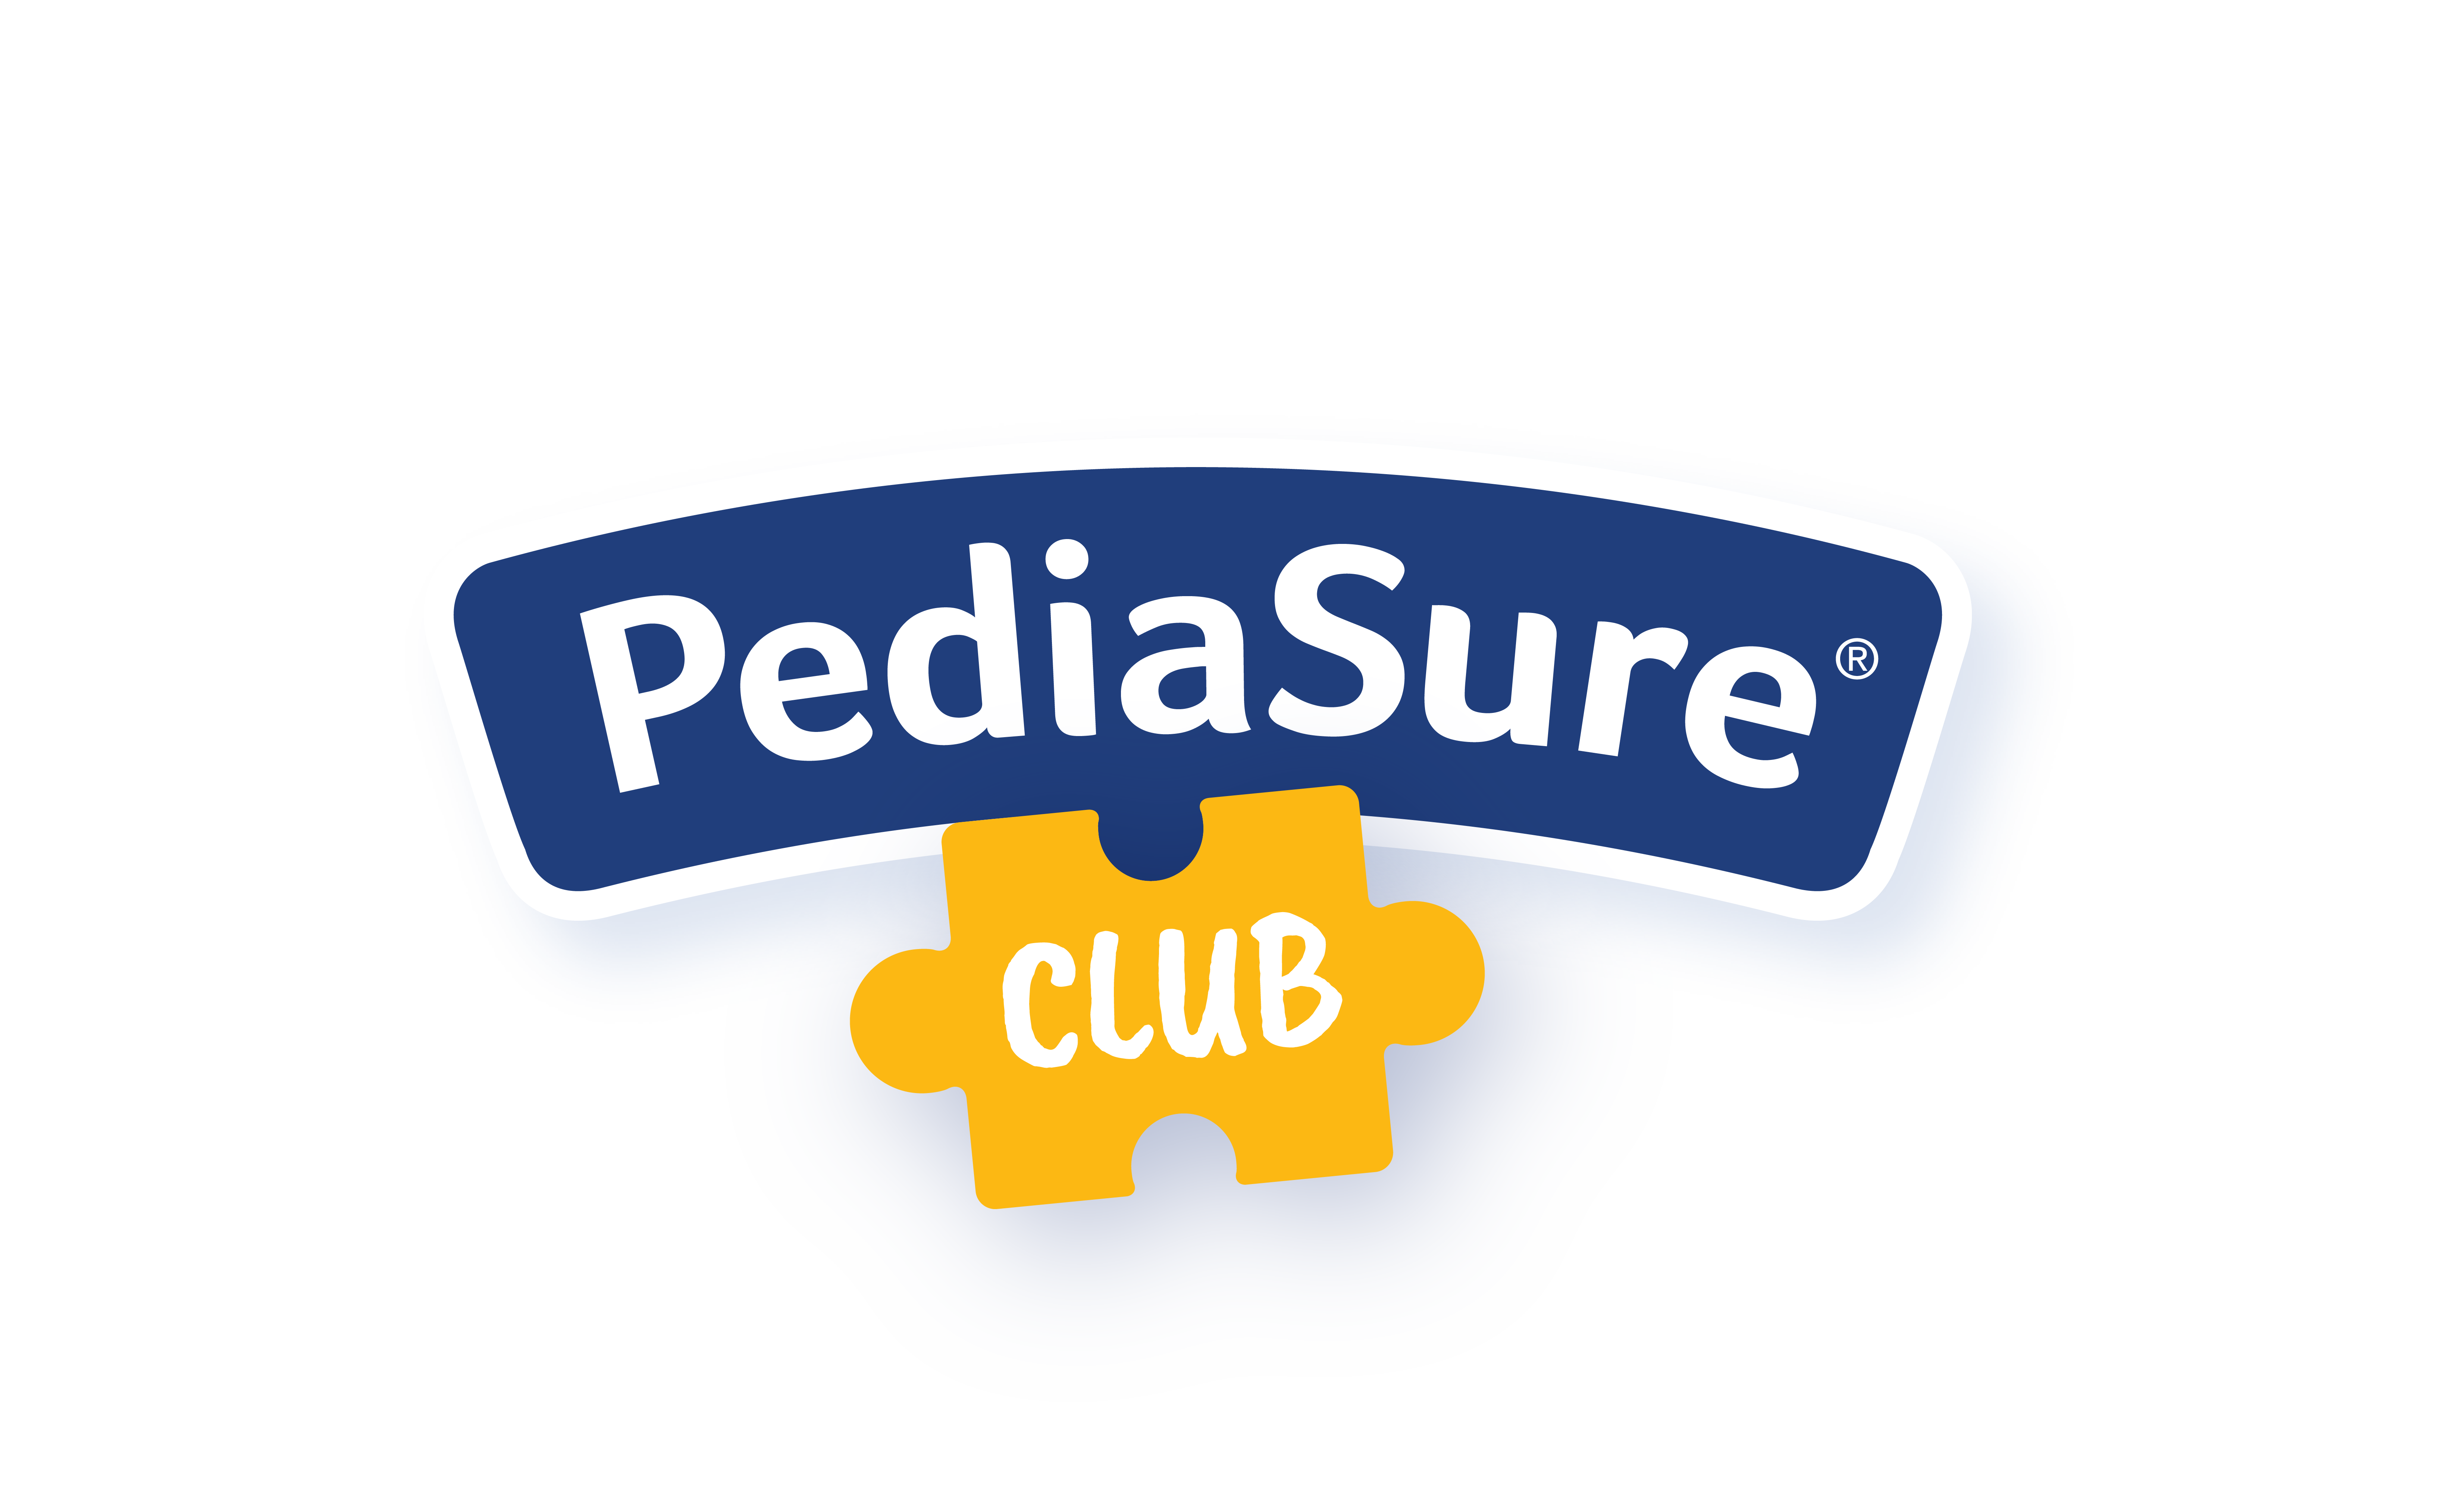 PediaSure Club